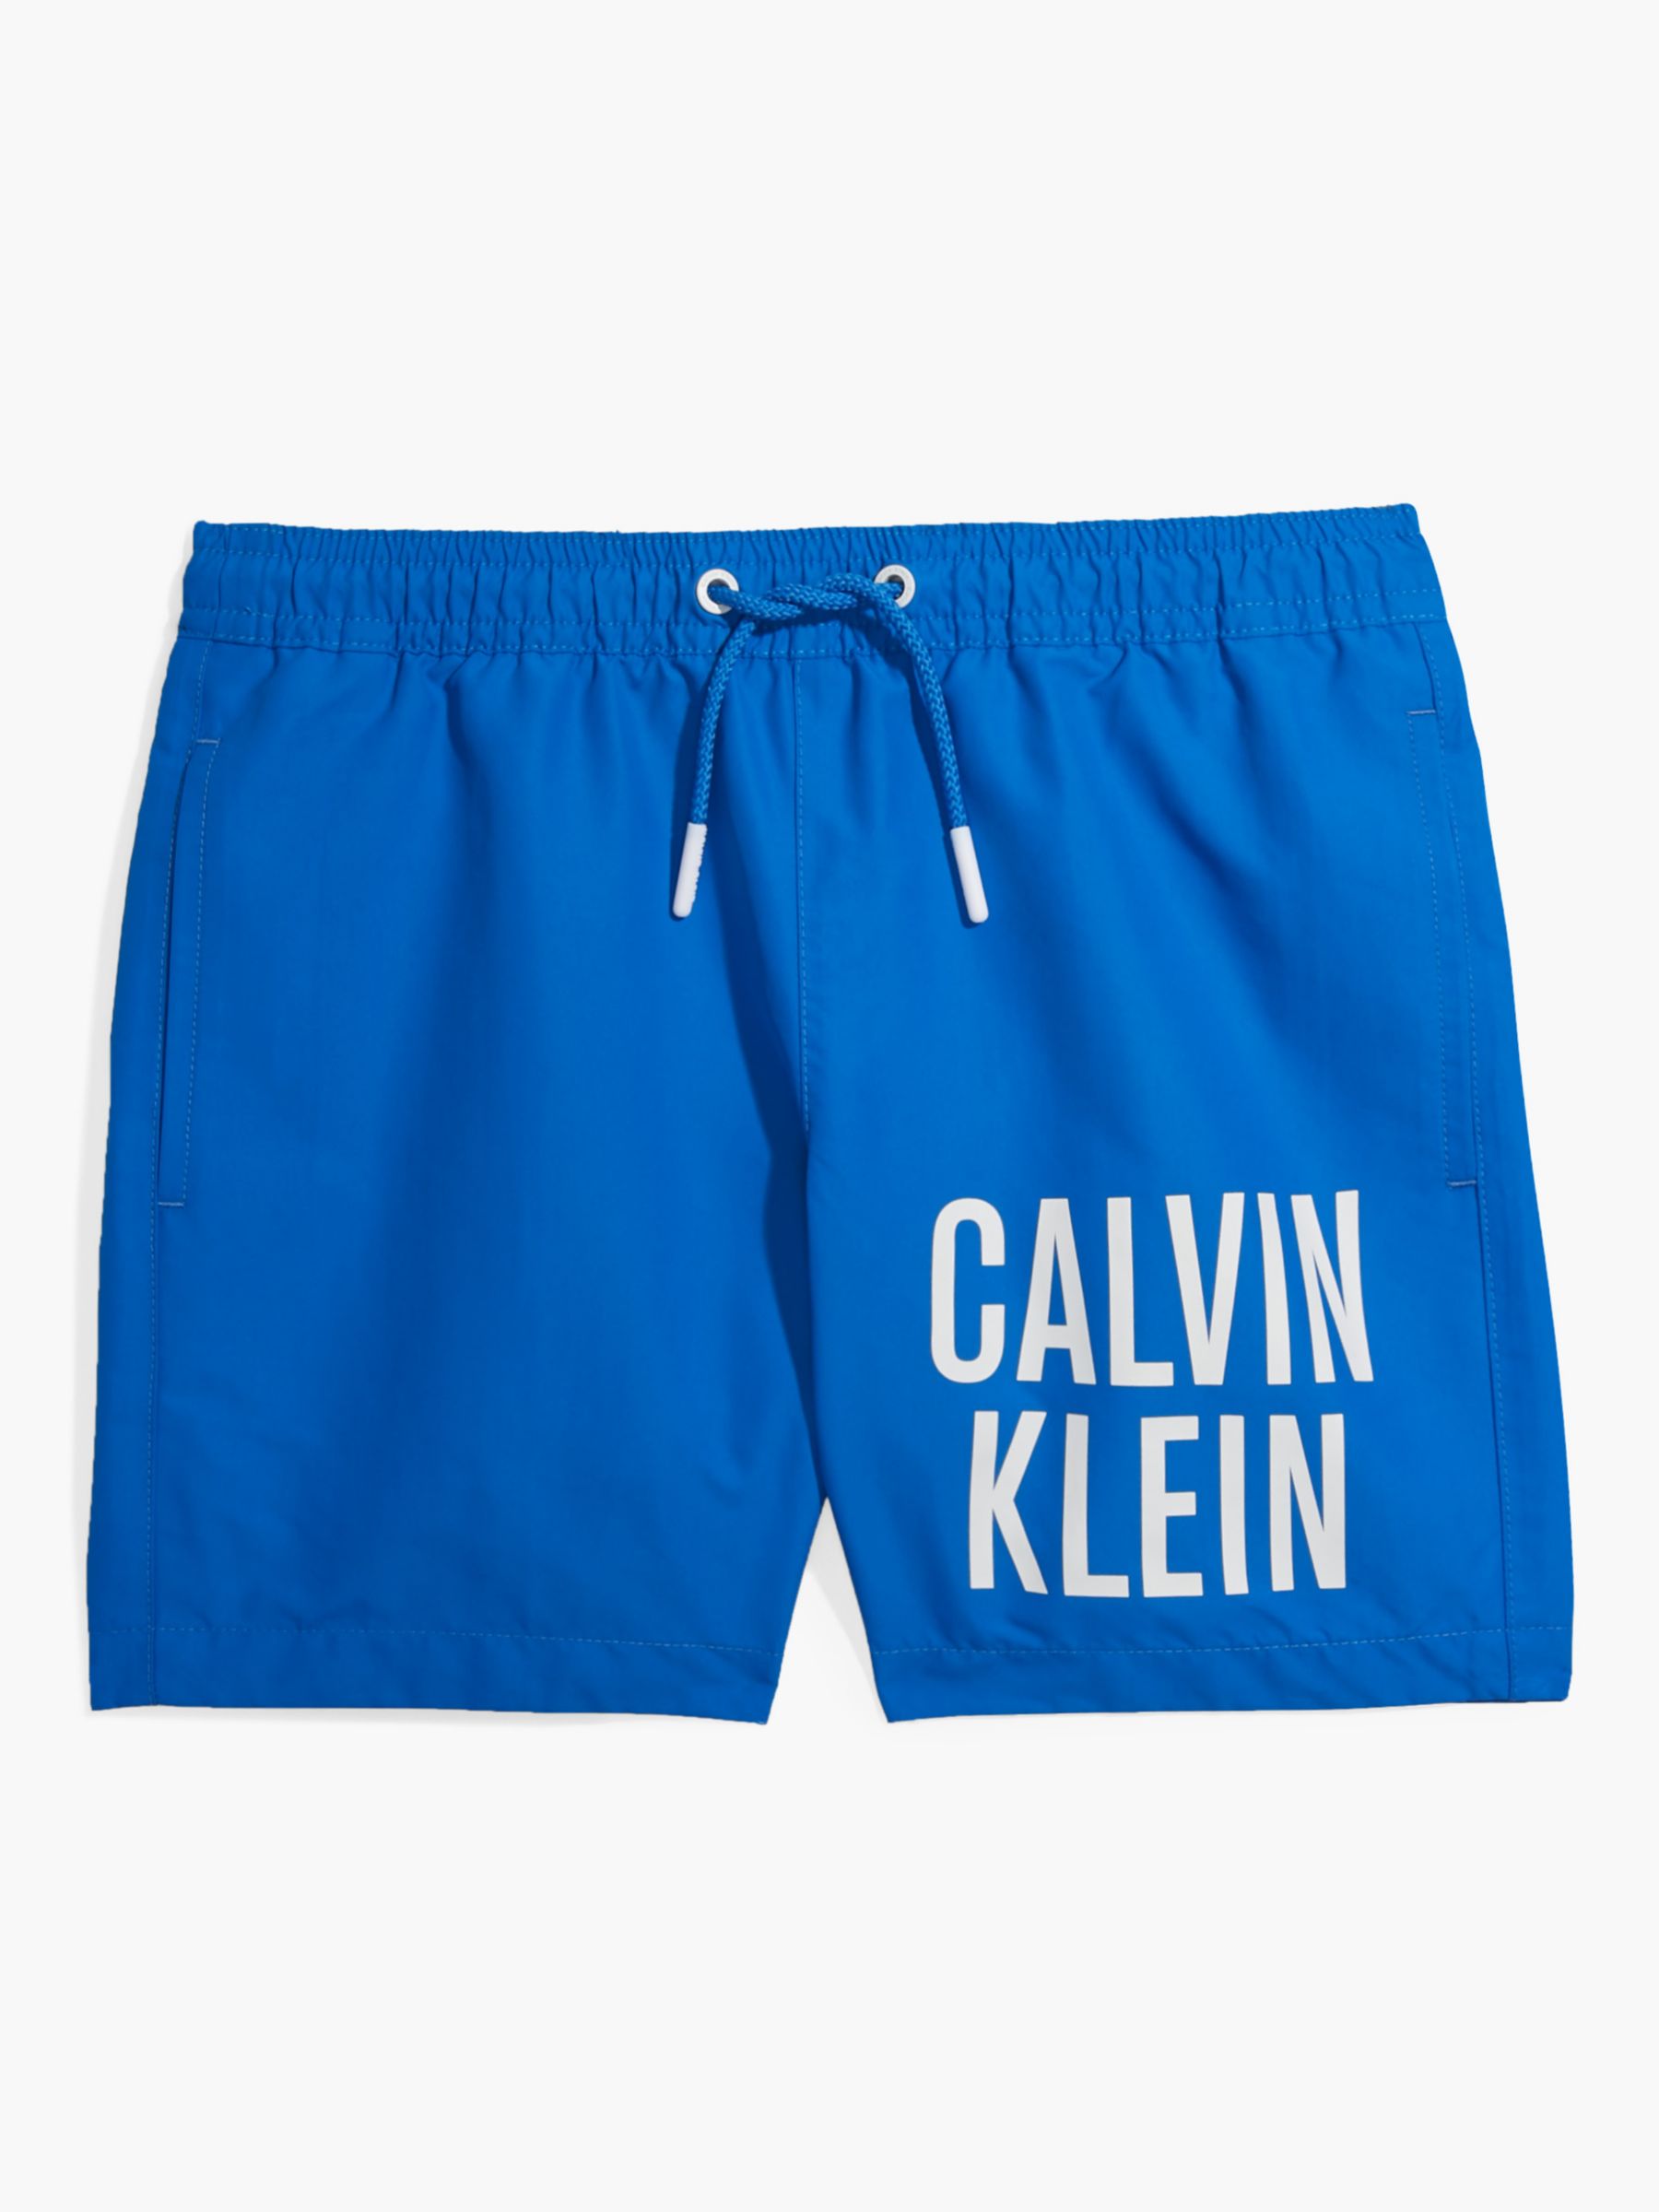 Calvin Klein Kids' Intense Power Medium Drawstring Swim Shorts, Dynamic ...